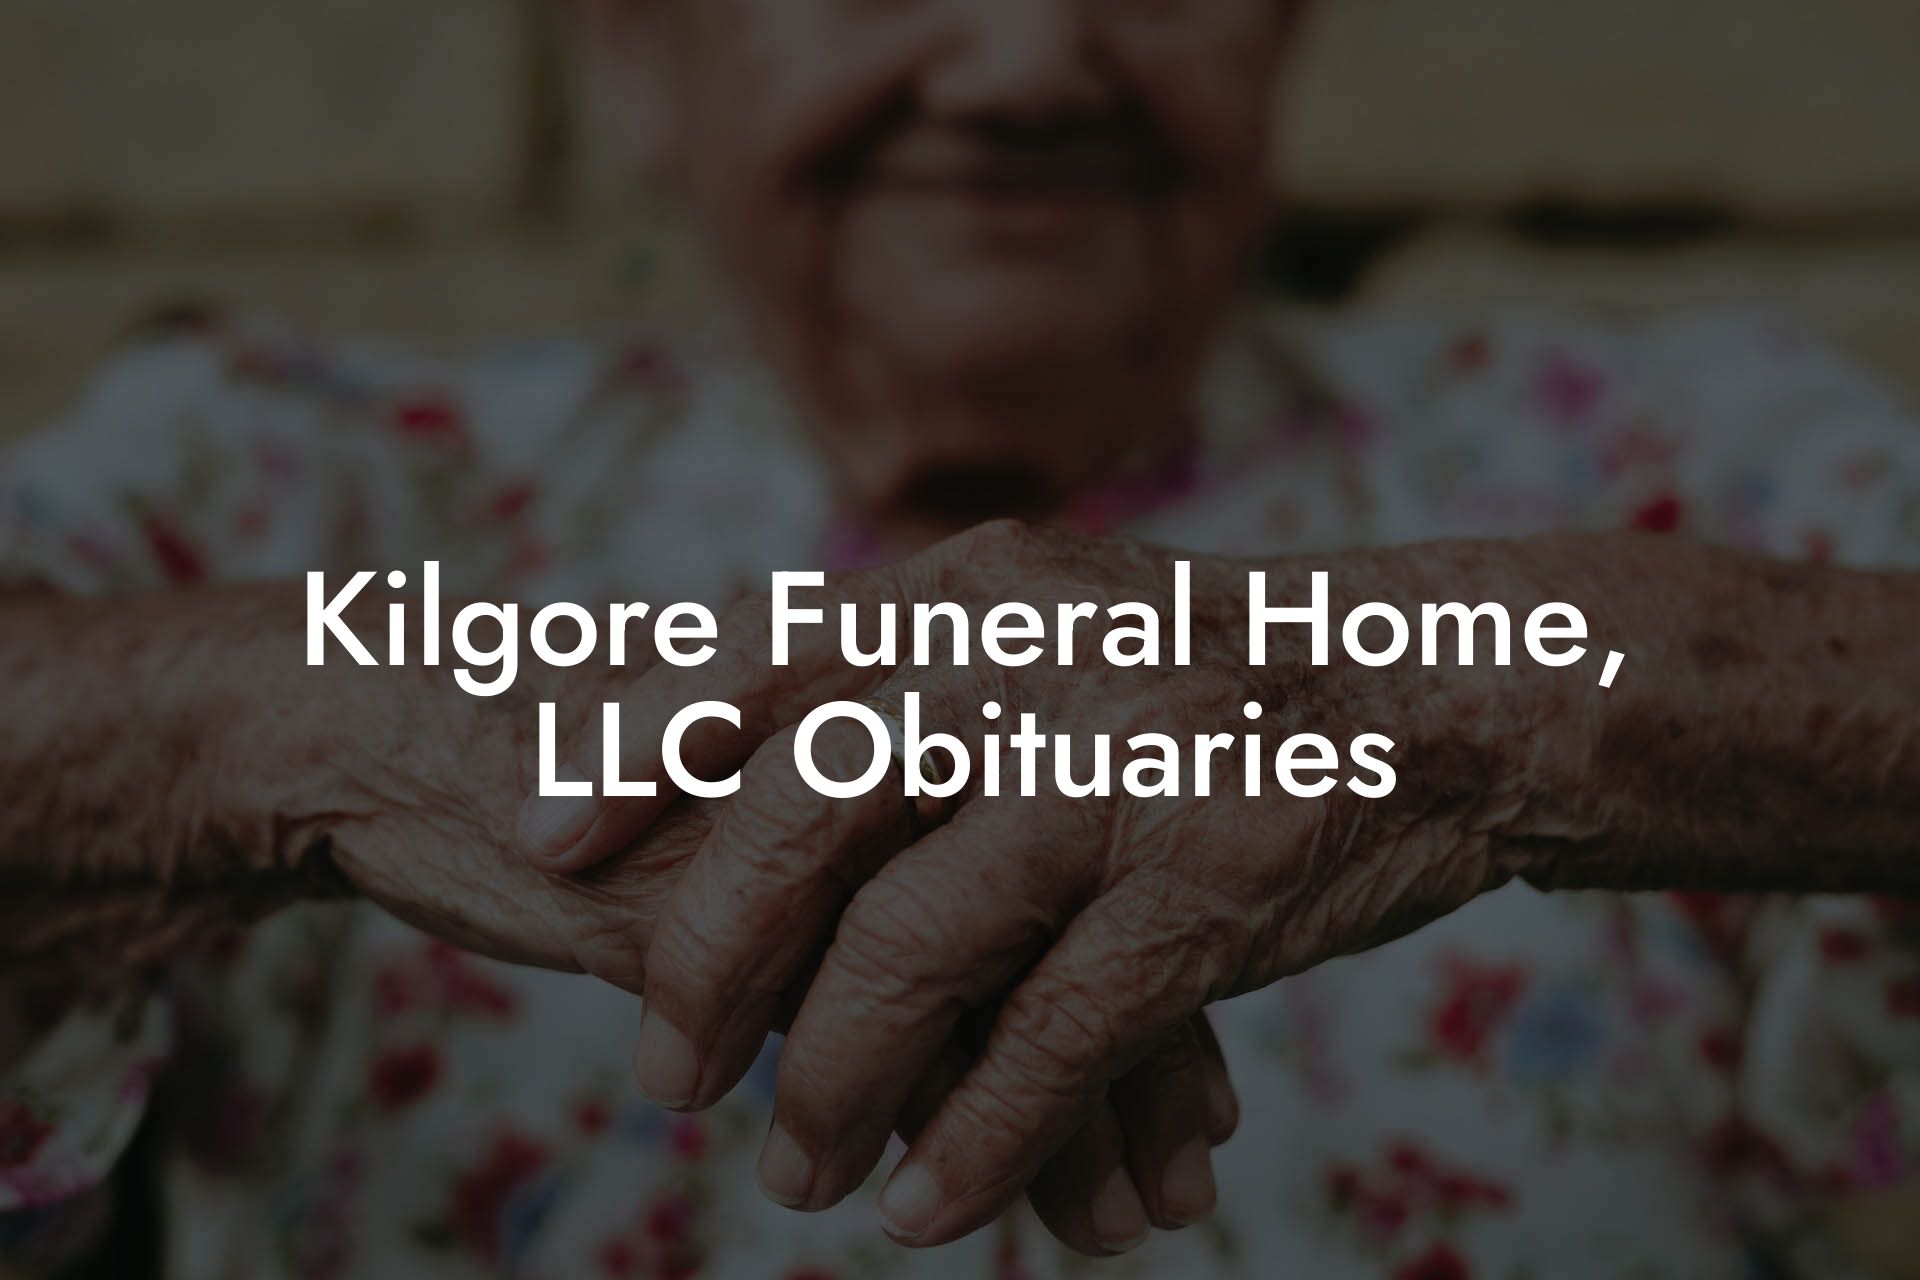 Kilgore Funeral Home, LLC Obituaries